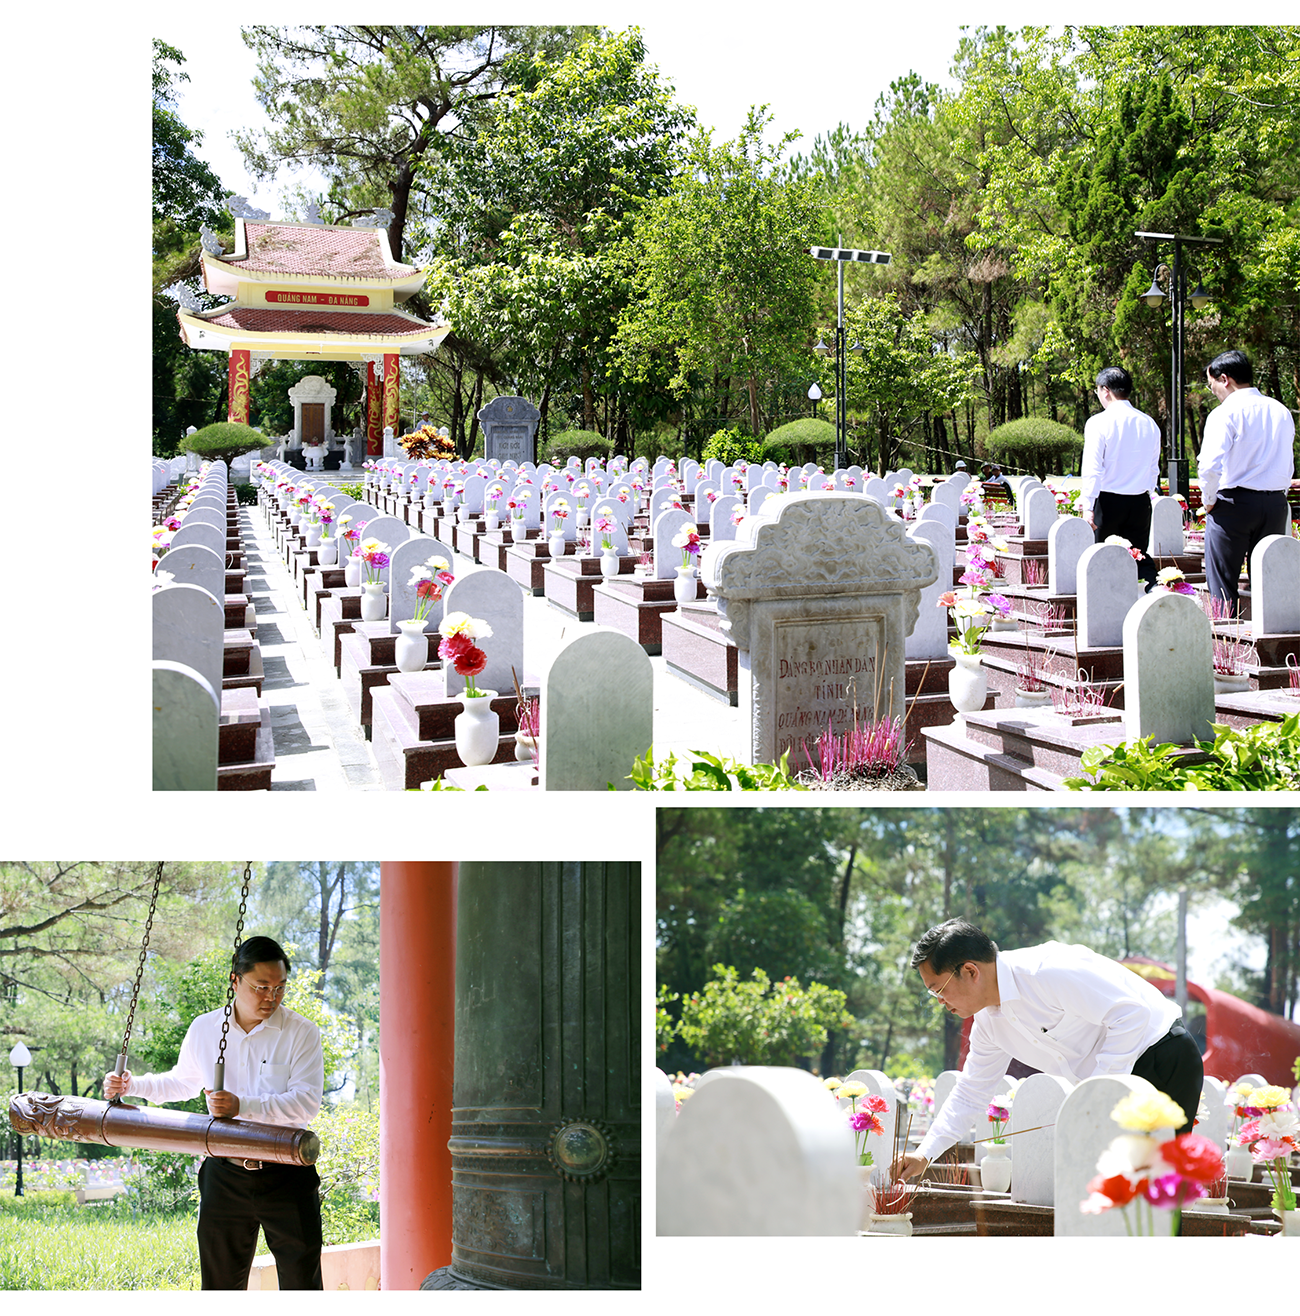 Đoàn công tác của tỉnh Quảng Nam viếng hương tại Nghĩa trang liệt sĩ Trường Sơn. Ảnh: THÀNH CÔNG